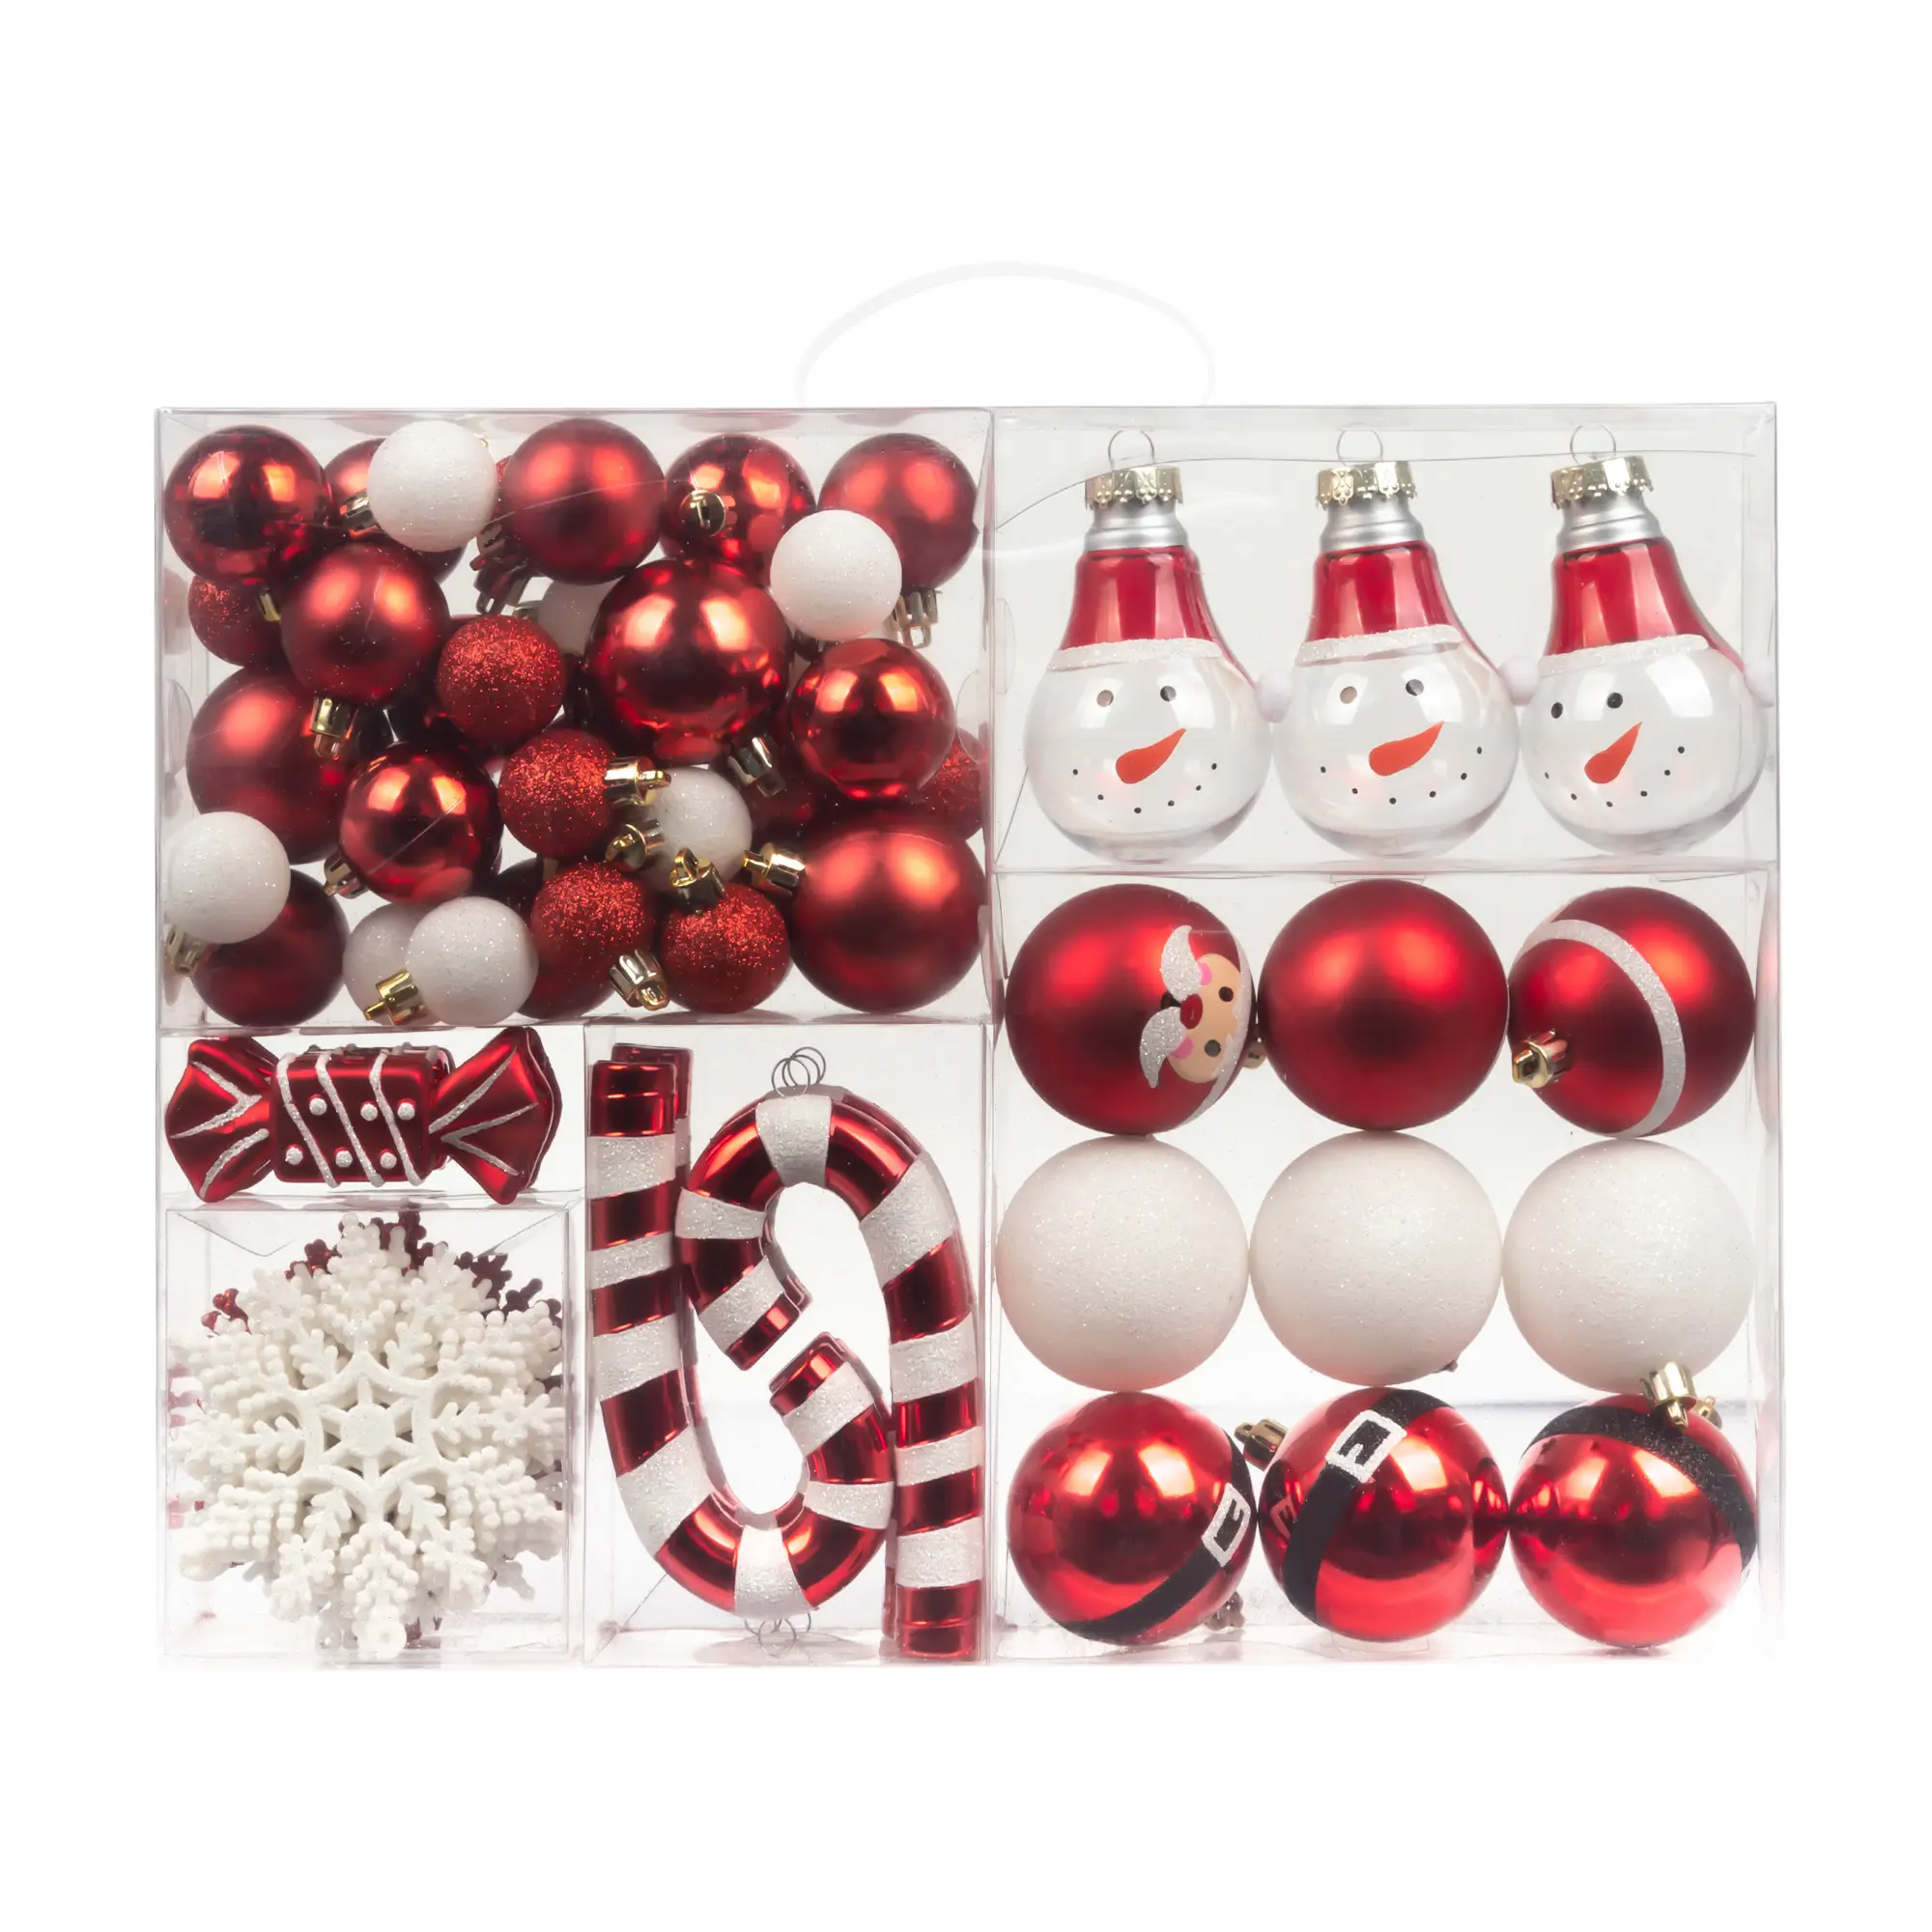 Atacado Enfeites de Natal Pendurado Decoração Da Árvore de Plástico Sortidas Conjunto Bola De Natal Ornamentos Shatterproof red branco